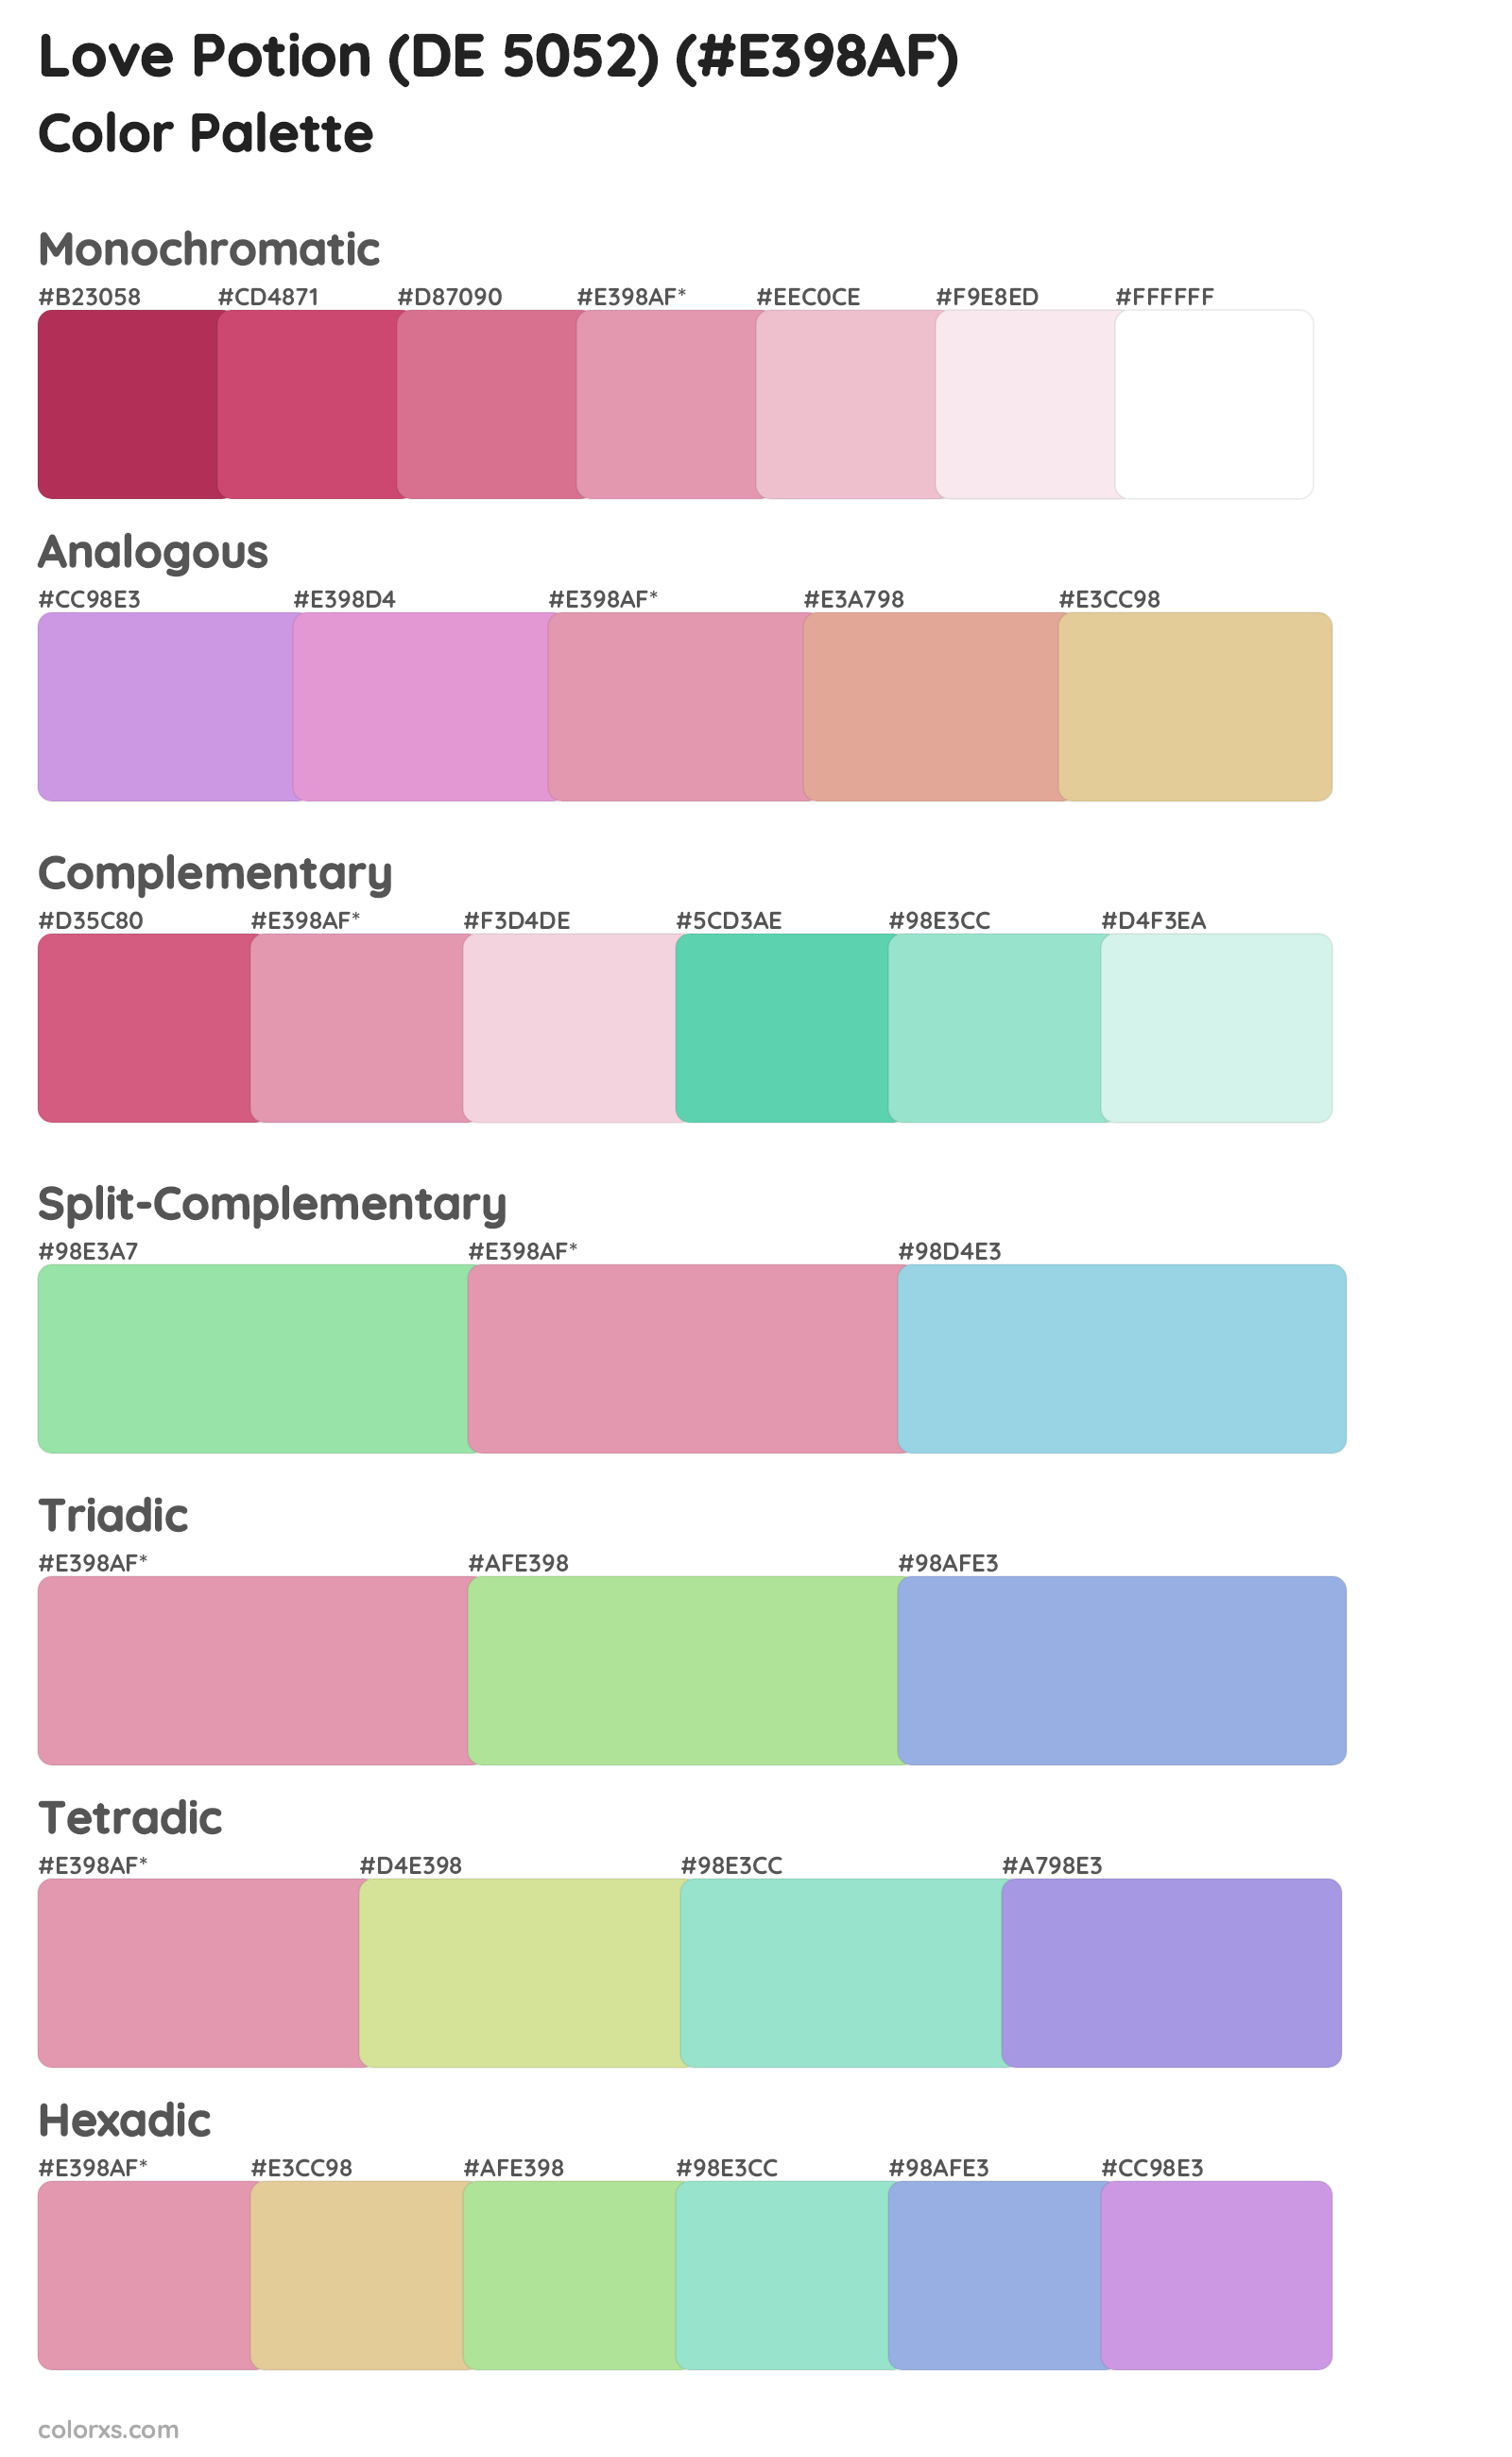 Love Potion (DE 5052) Color Scheme Palettes